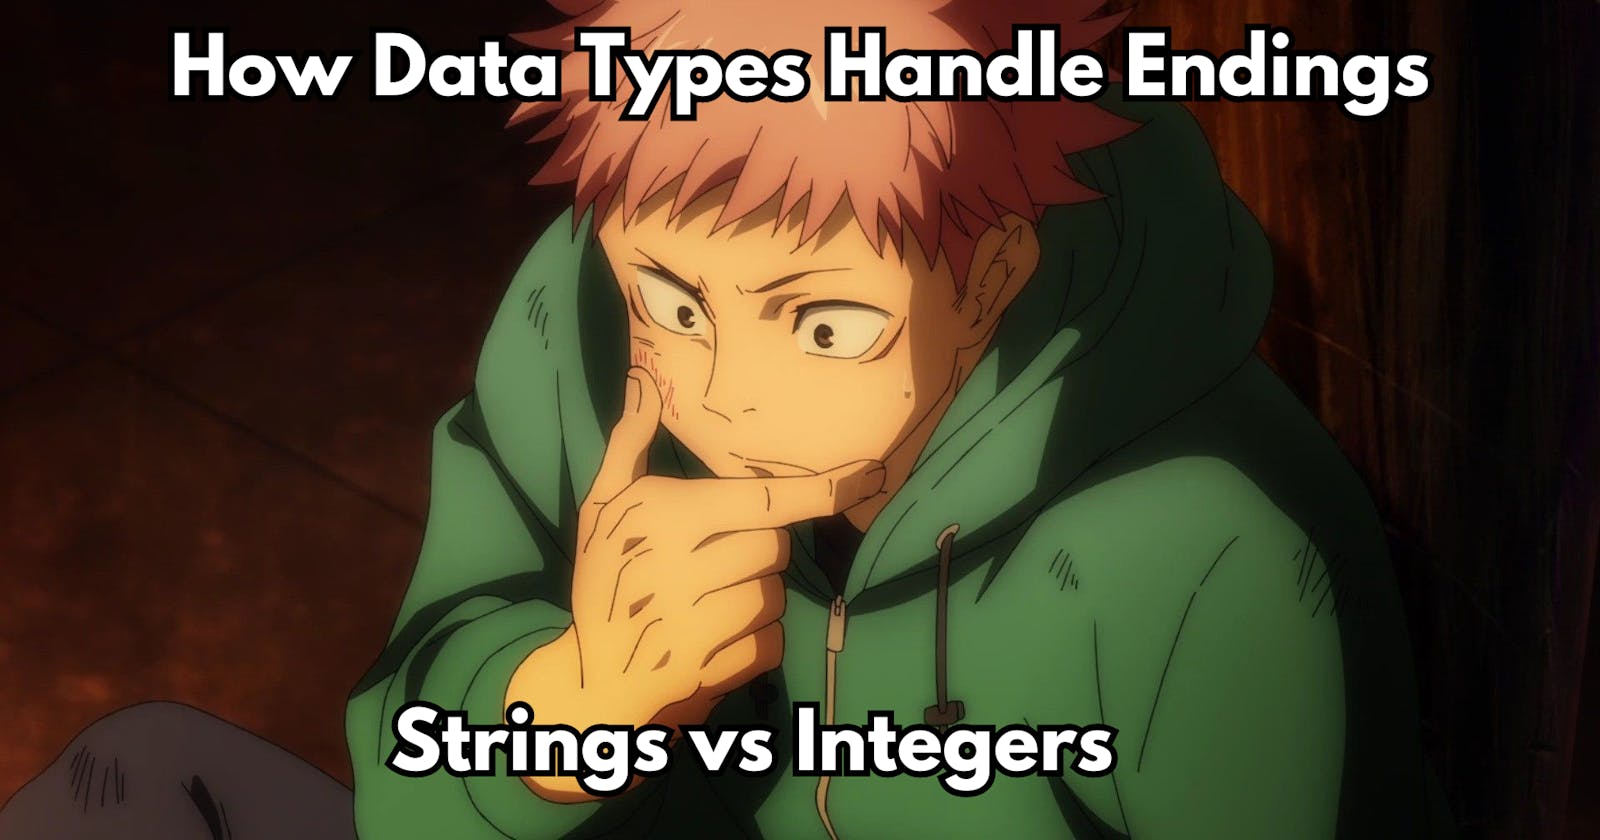 How Data Types Handle Endings: Strings vs Integers